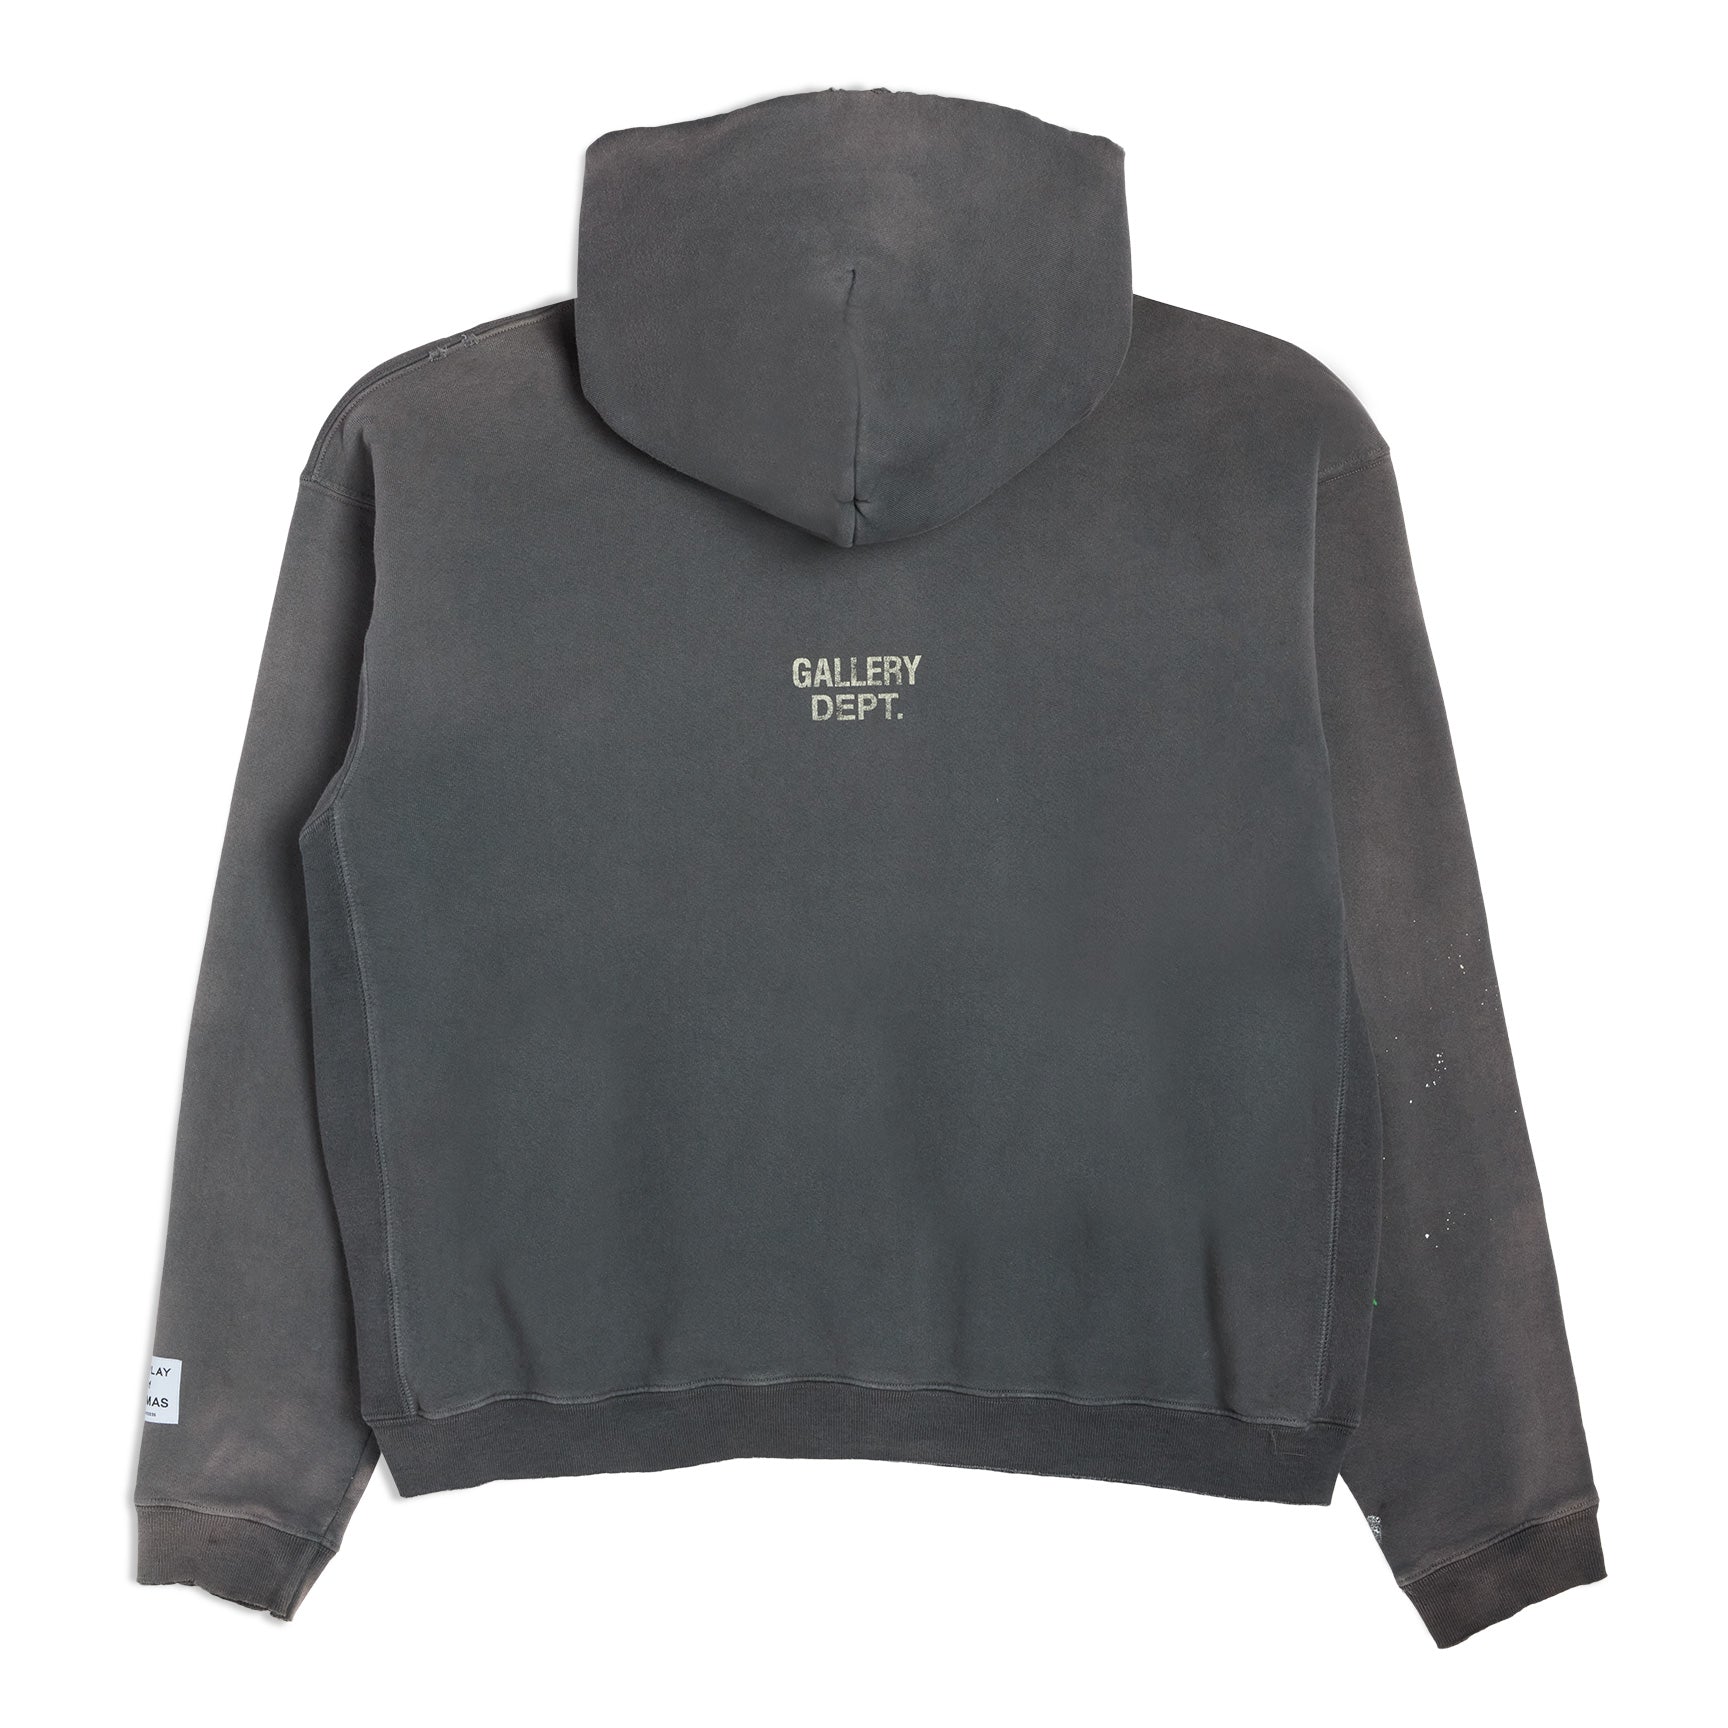 Gallery Dept. Vintage Half Zip Hoodie Sweatshirt Size Small 100% Authentic